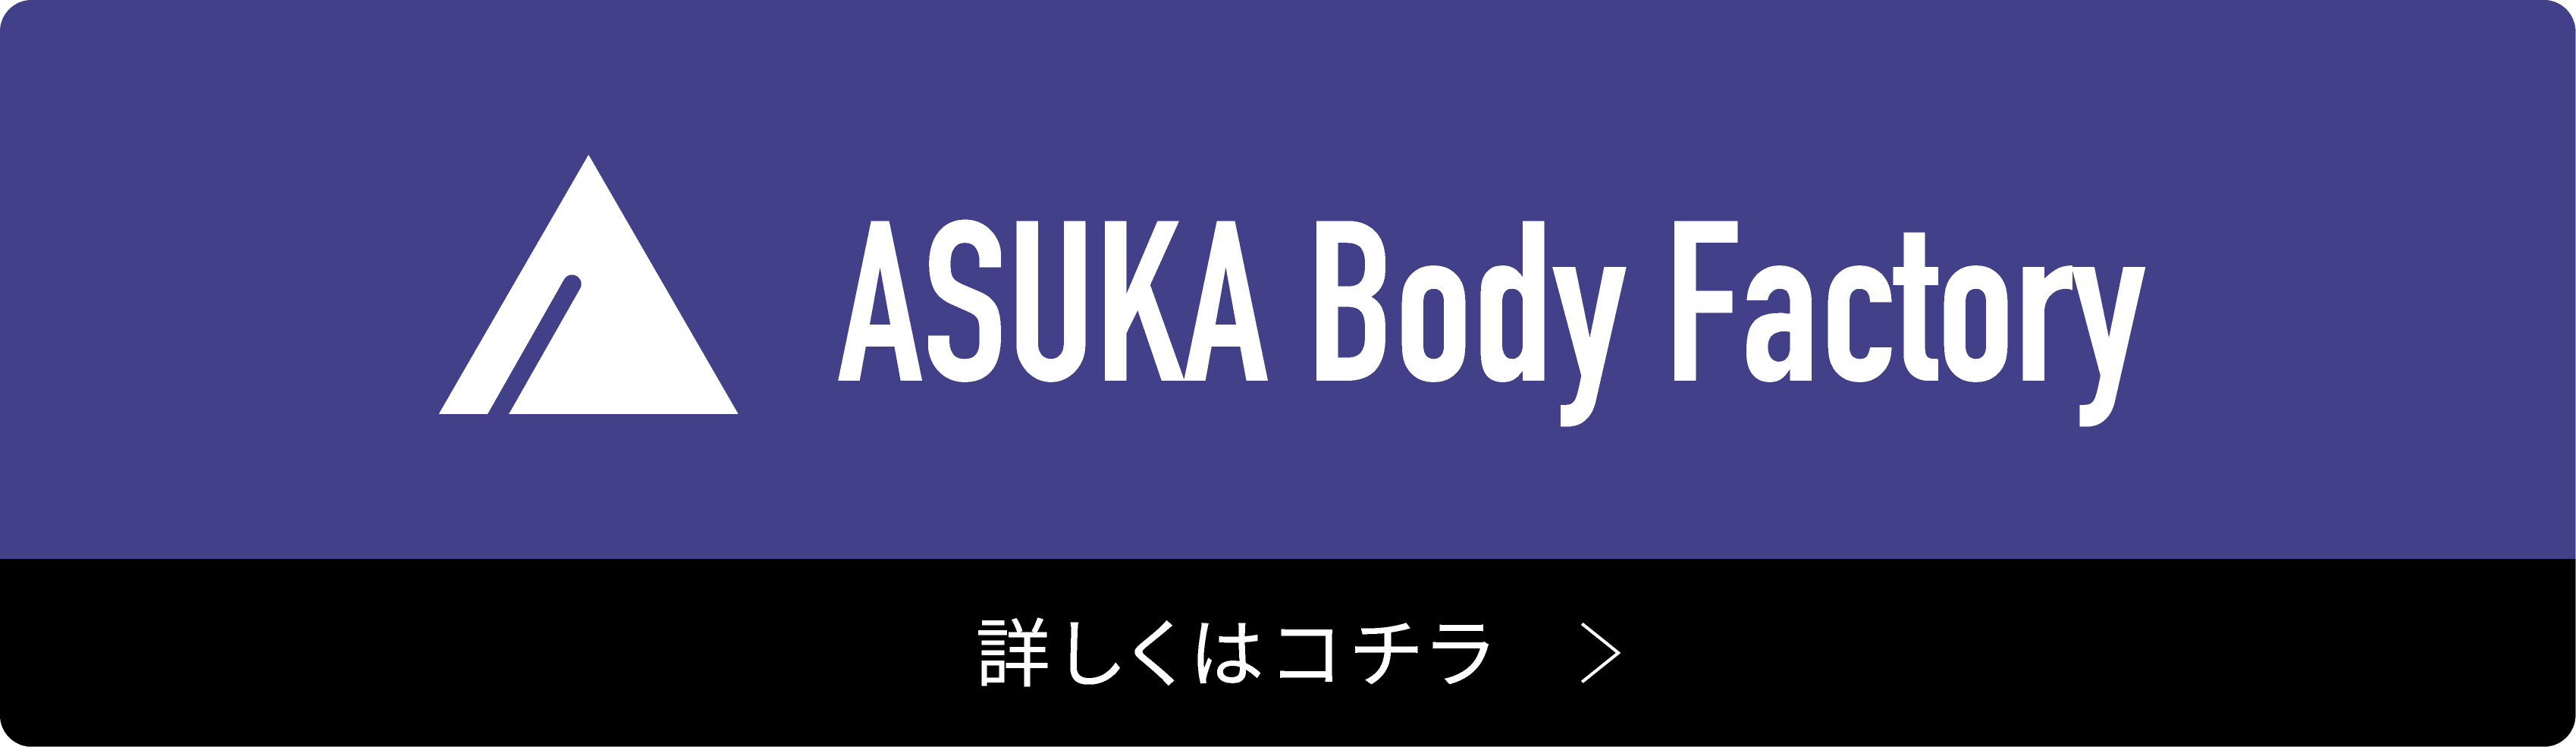 完全貸切パーソナルジム ASUKA Body Facroryの詳細